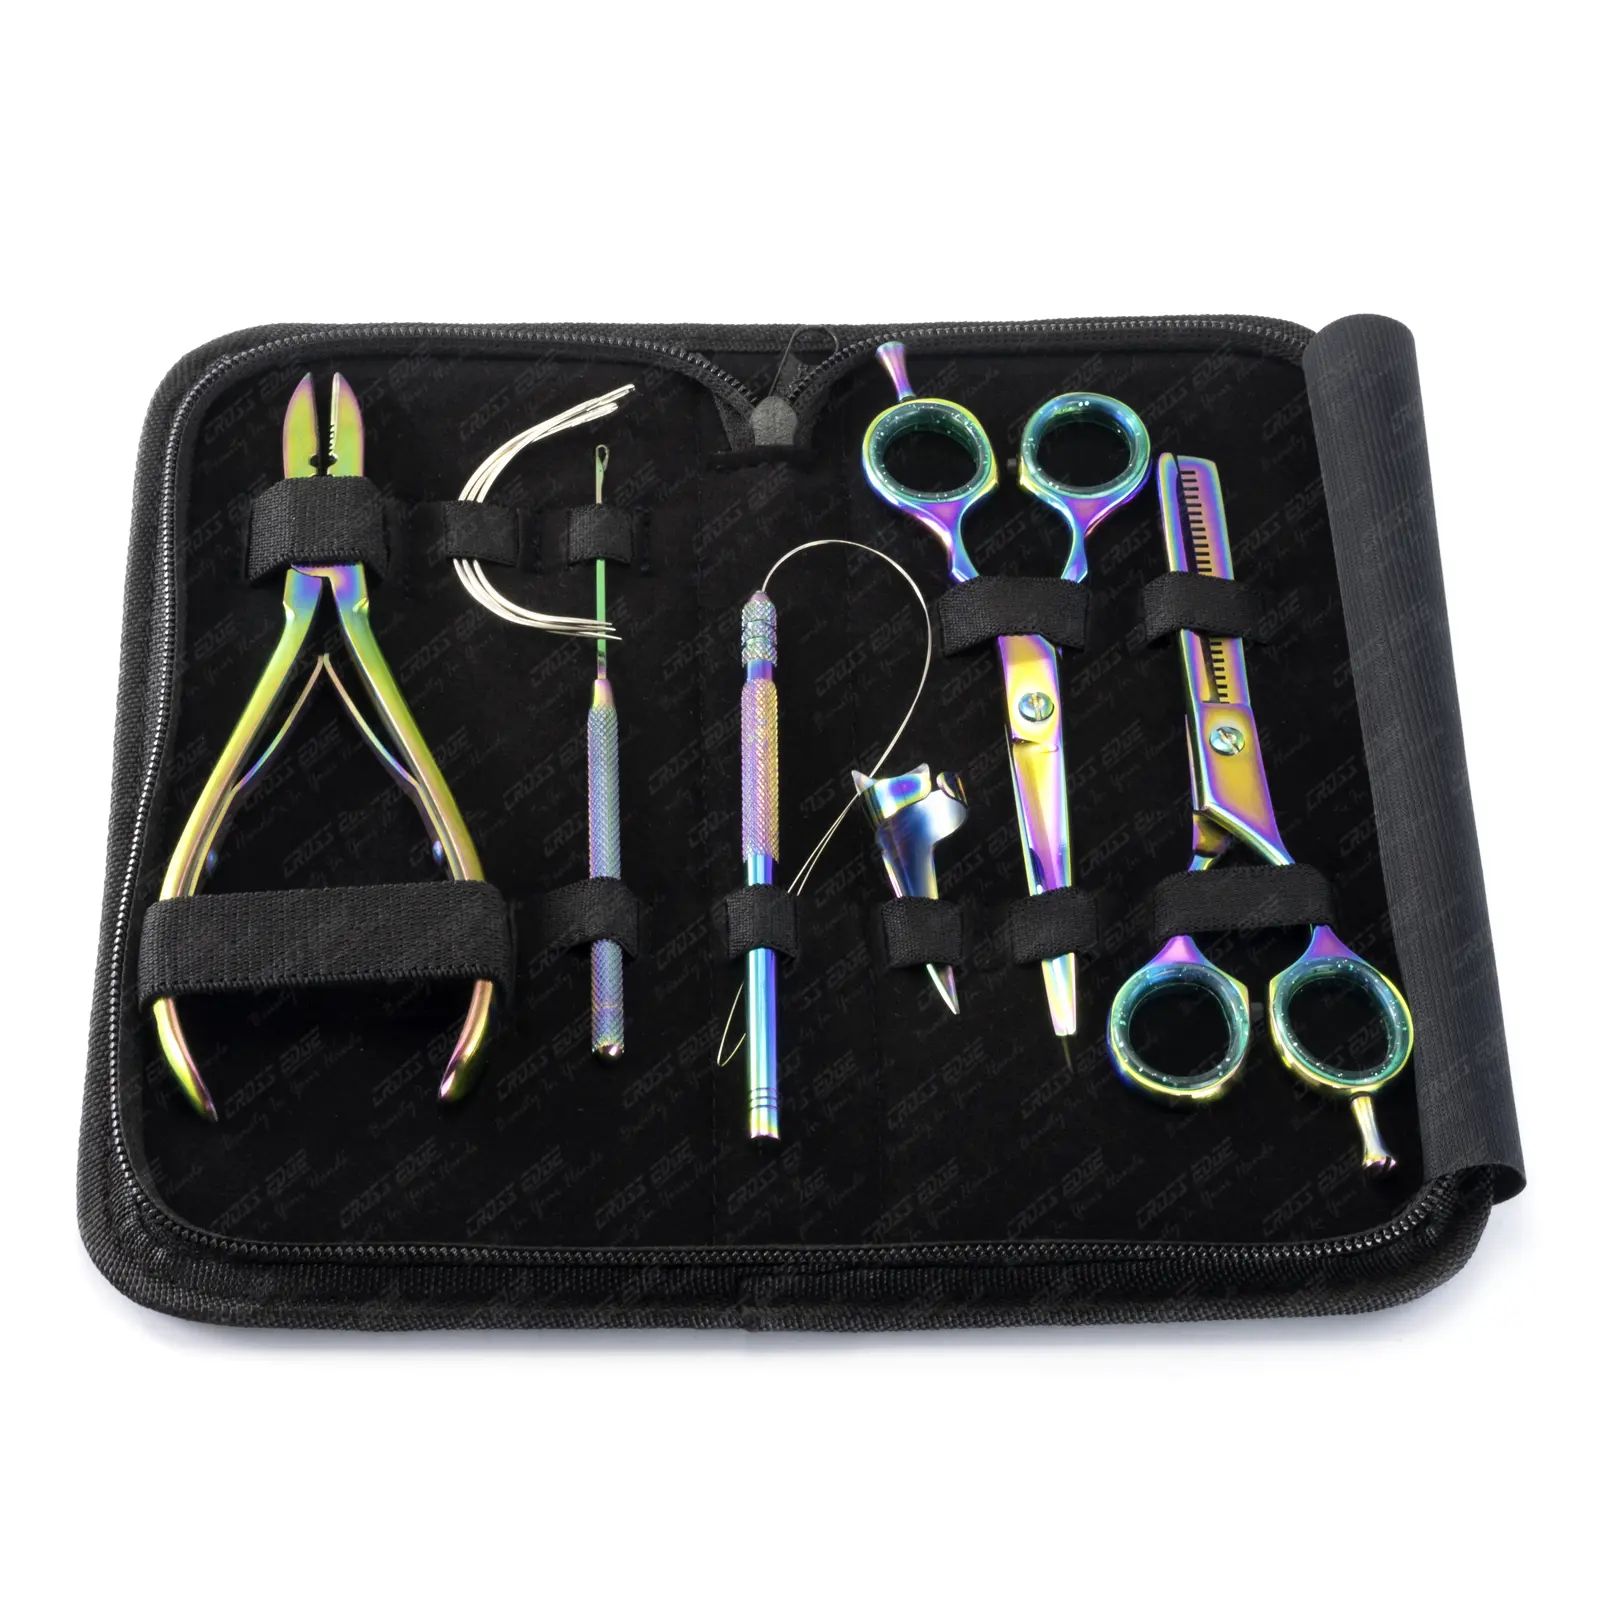 Kit de herramientas de belleza para extensiones de cabello, alicates multiusos para extensiones de cabello, incluye peine para separar el cabello con agujas tipo C